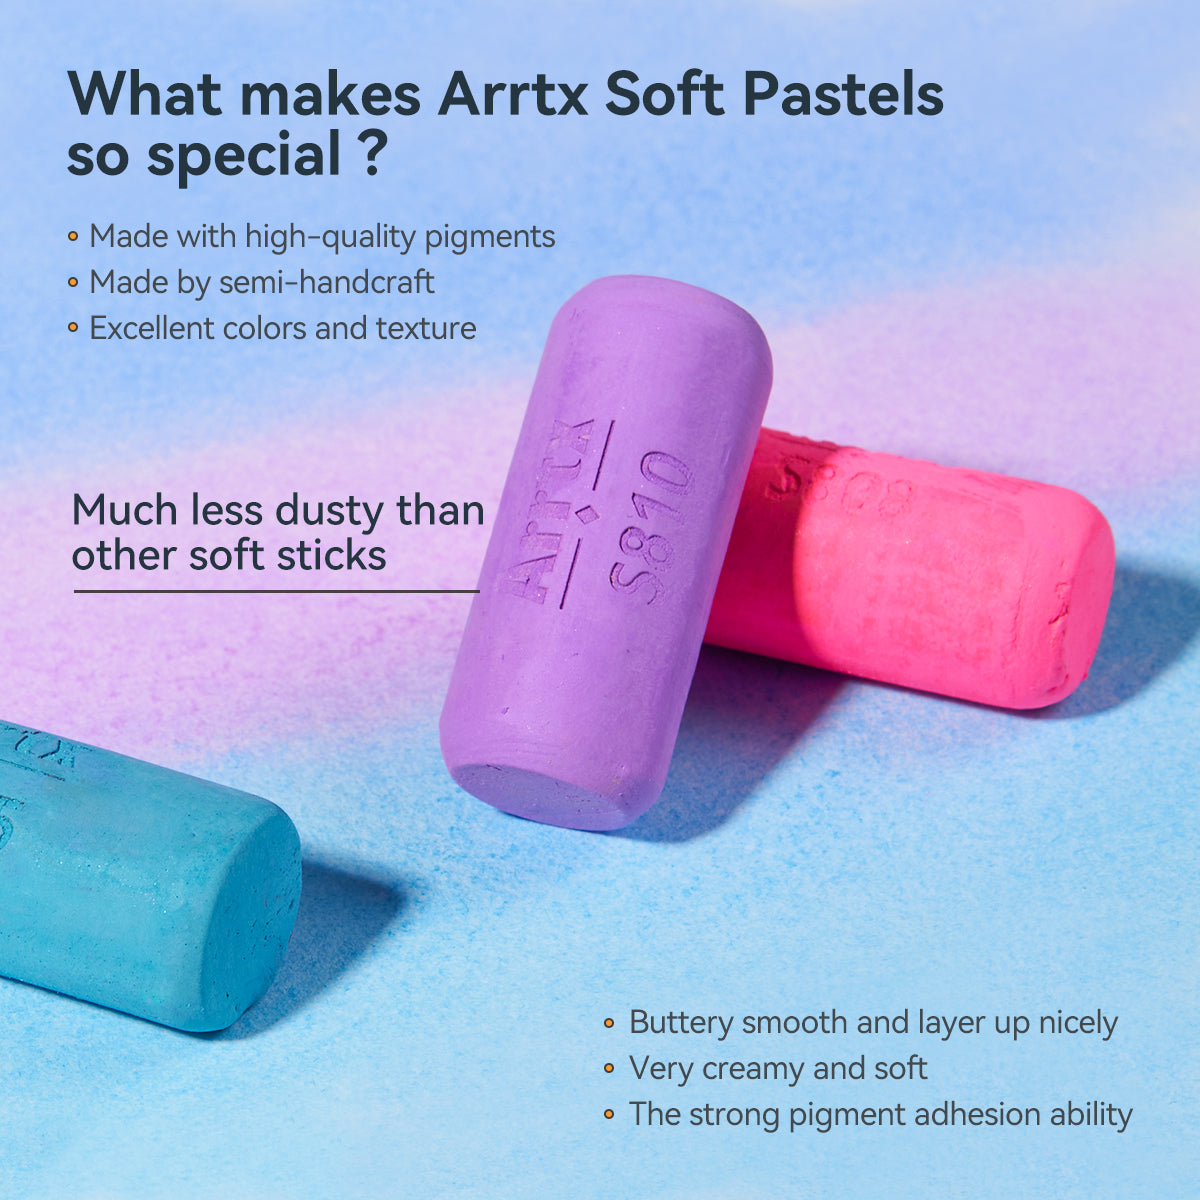 Arrtx 72 Colors Soft Pastels Set High Grade Colors